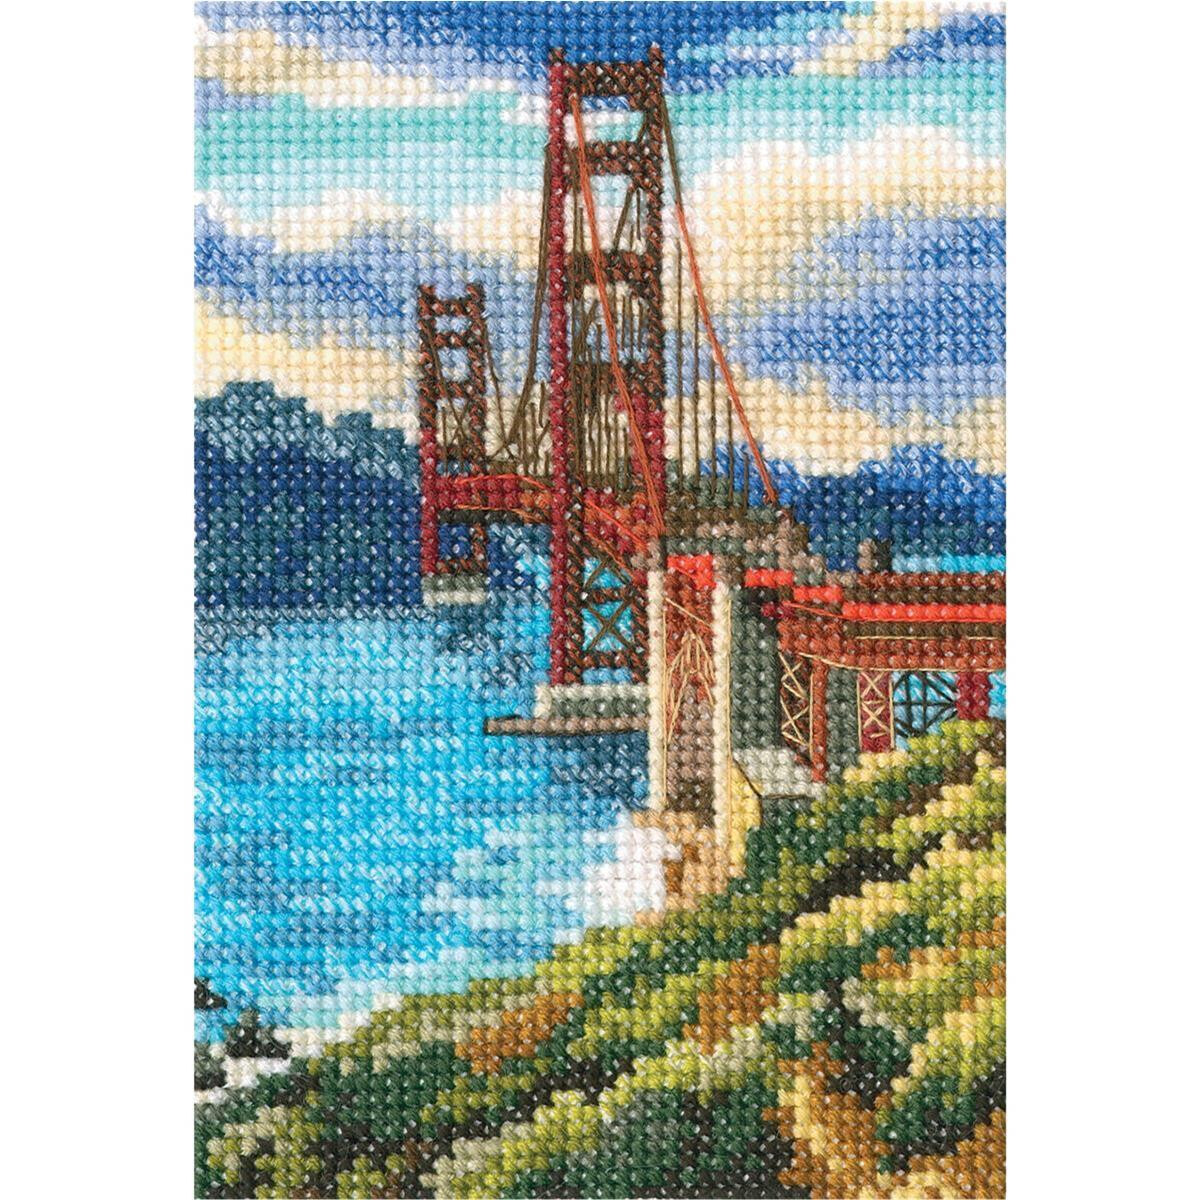 rto kruissteek set "Golden Gate Bridge" c302,...